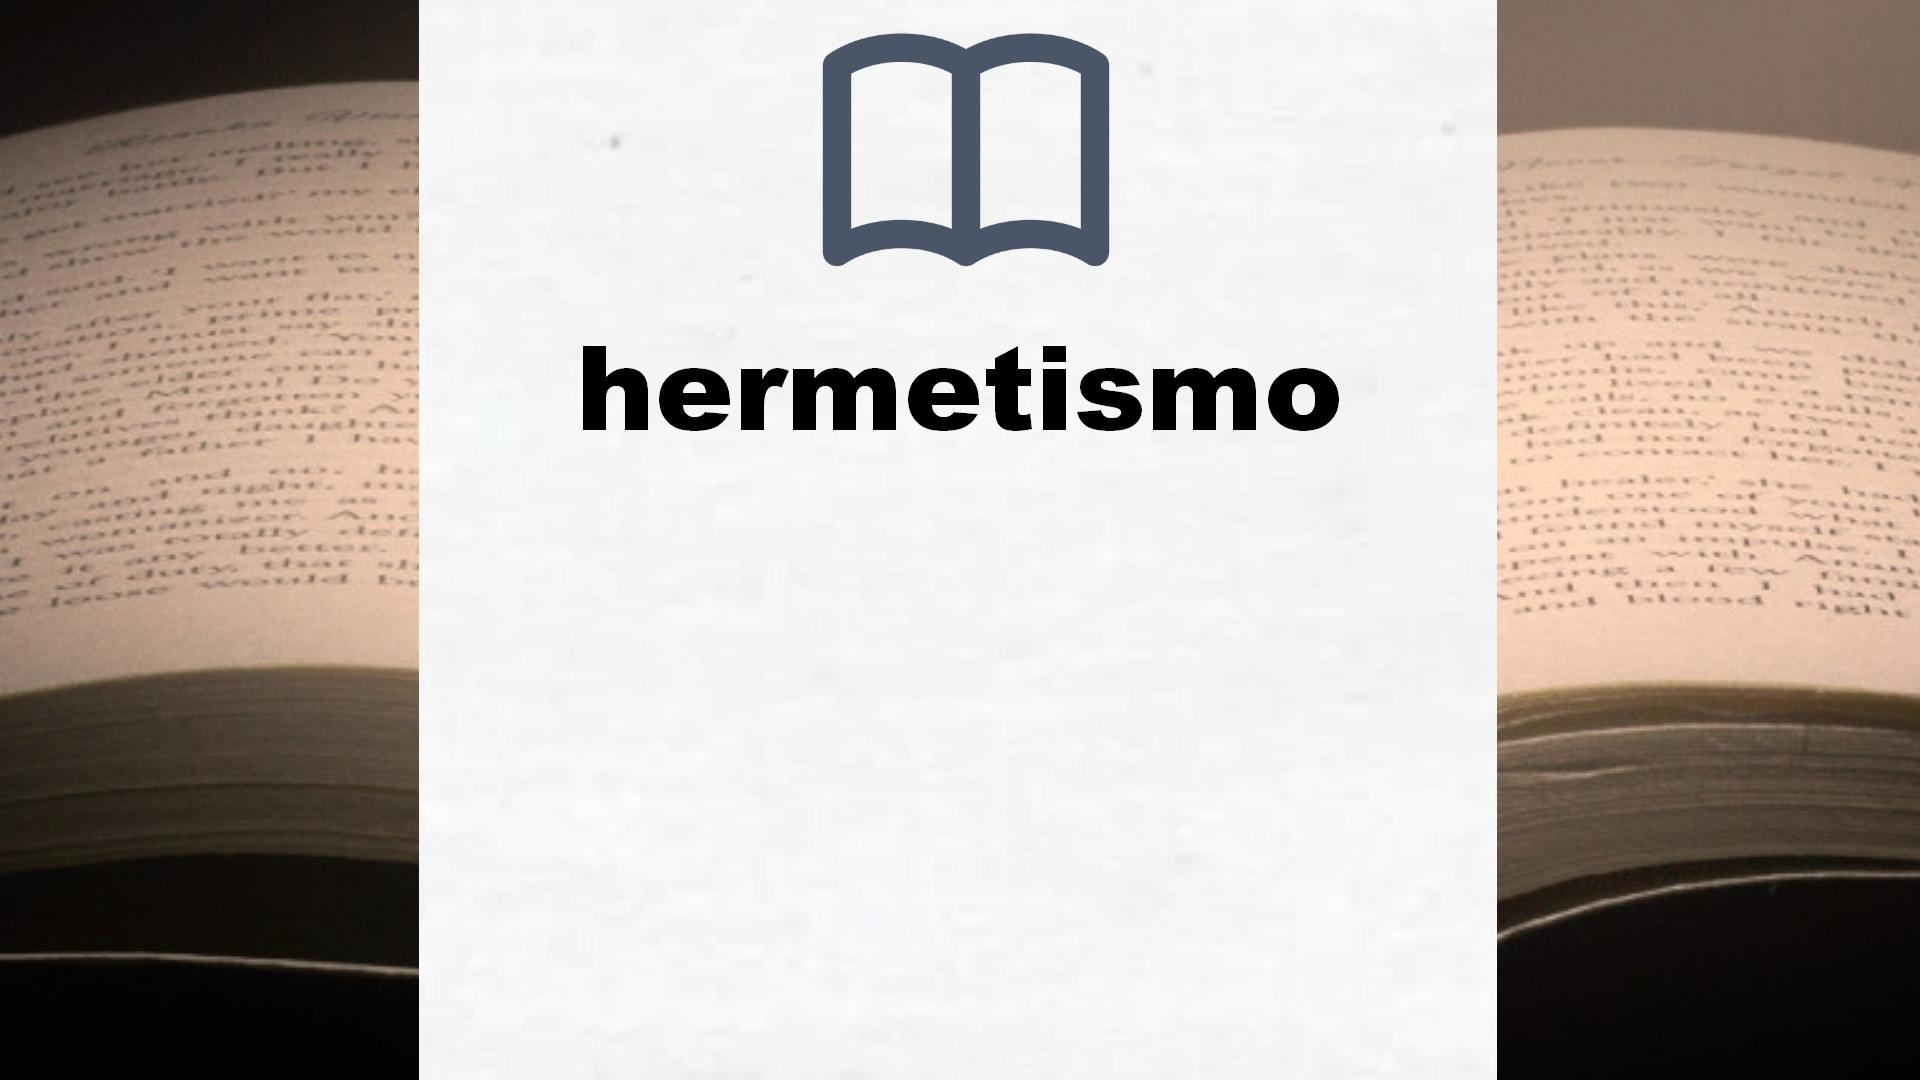 Libros sobre hermetismo